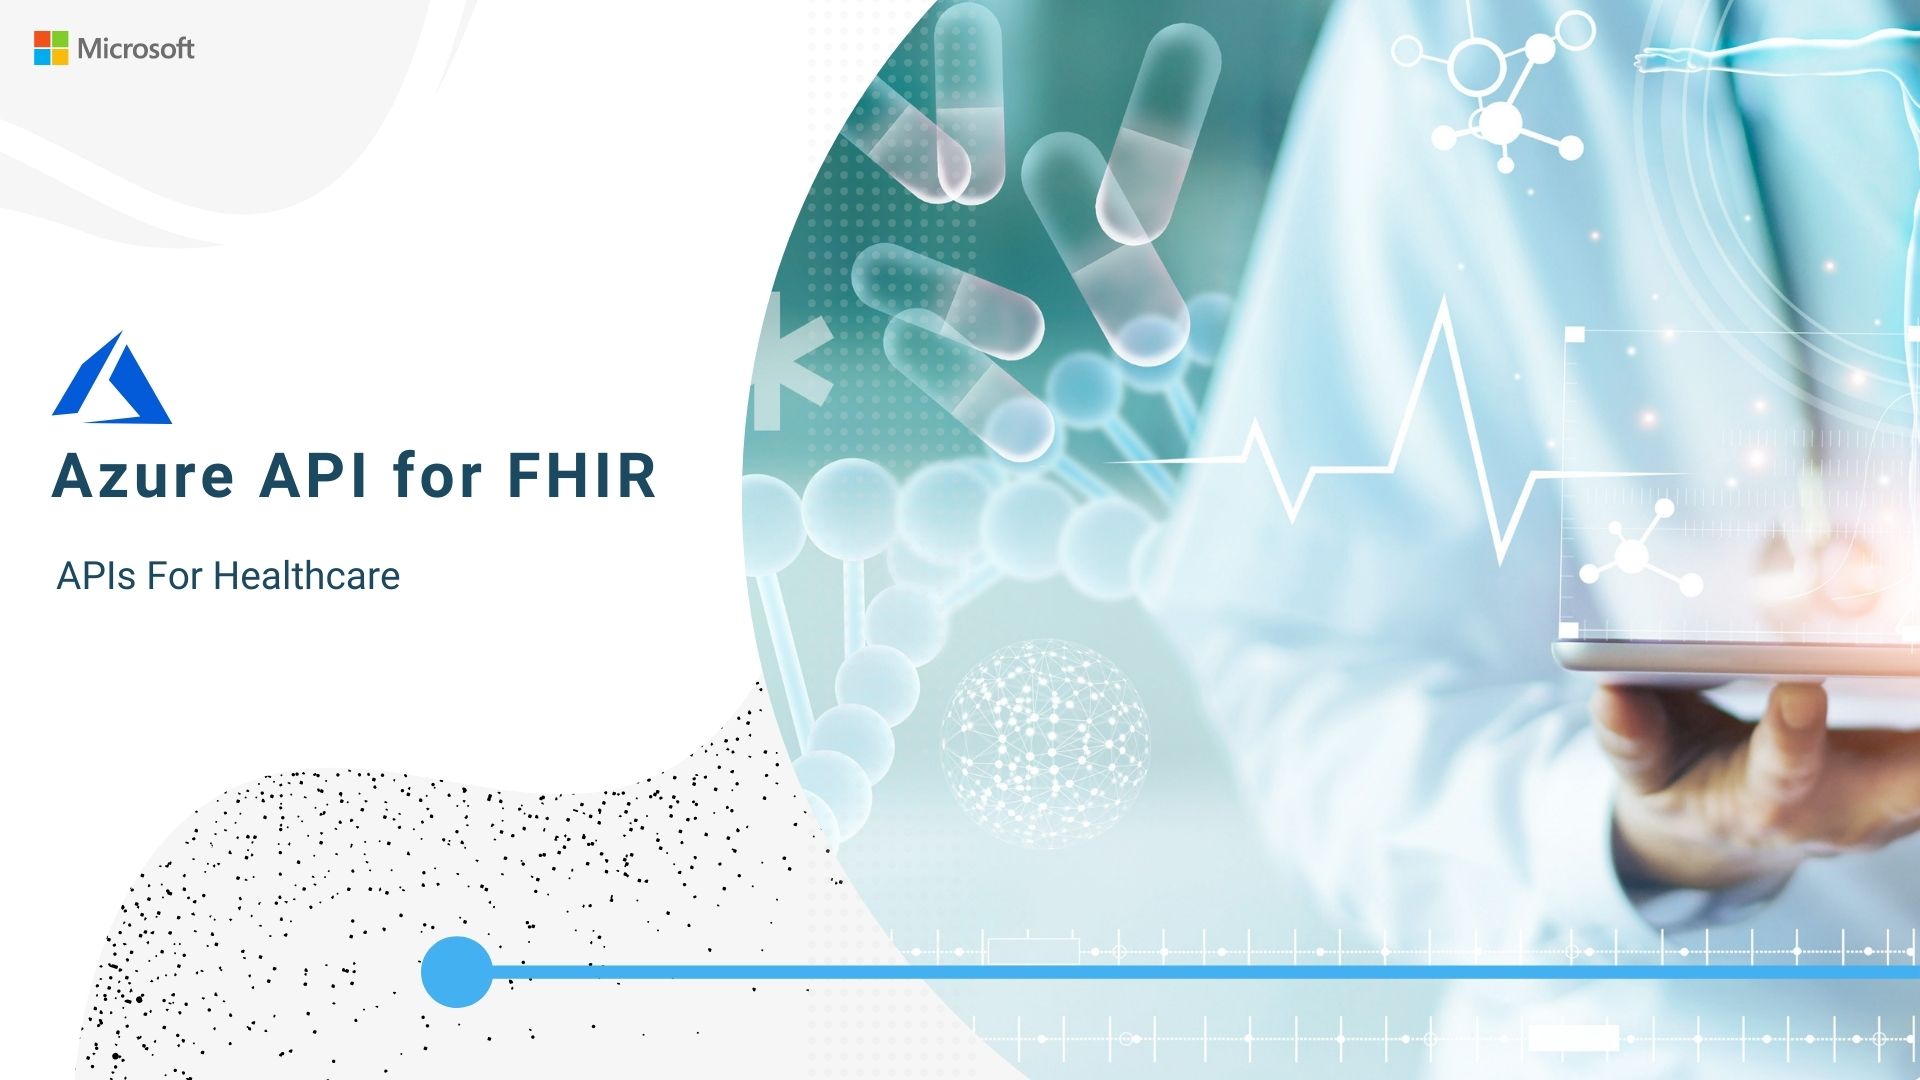 Azure API for FHIR: Healthcare APIs